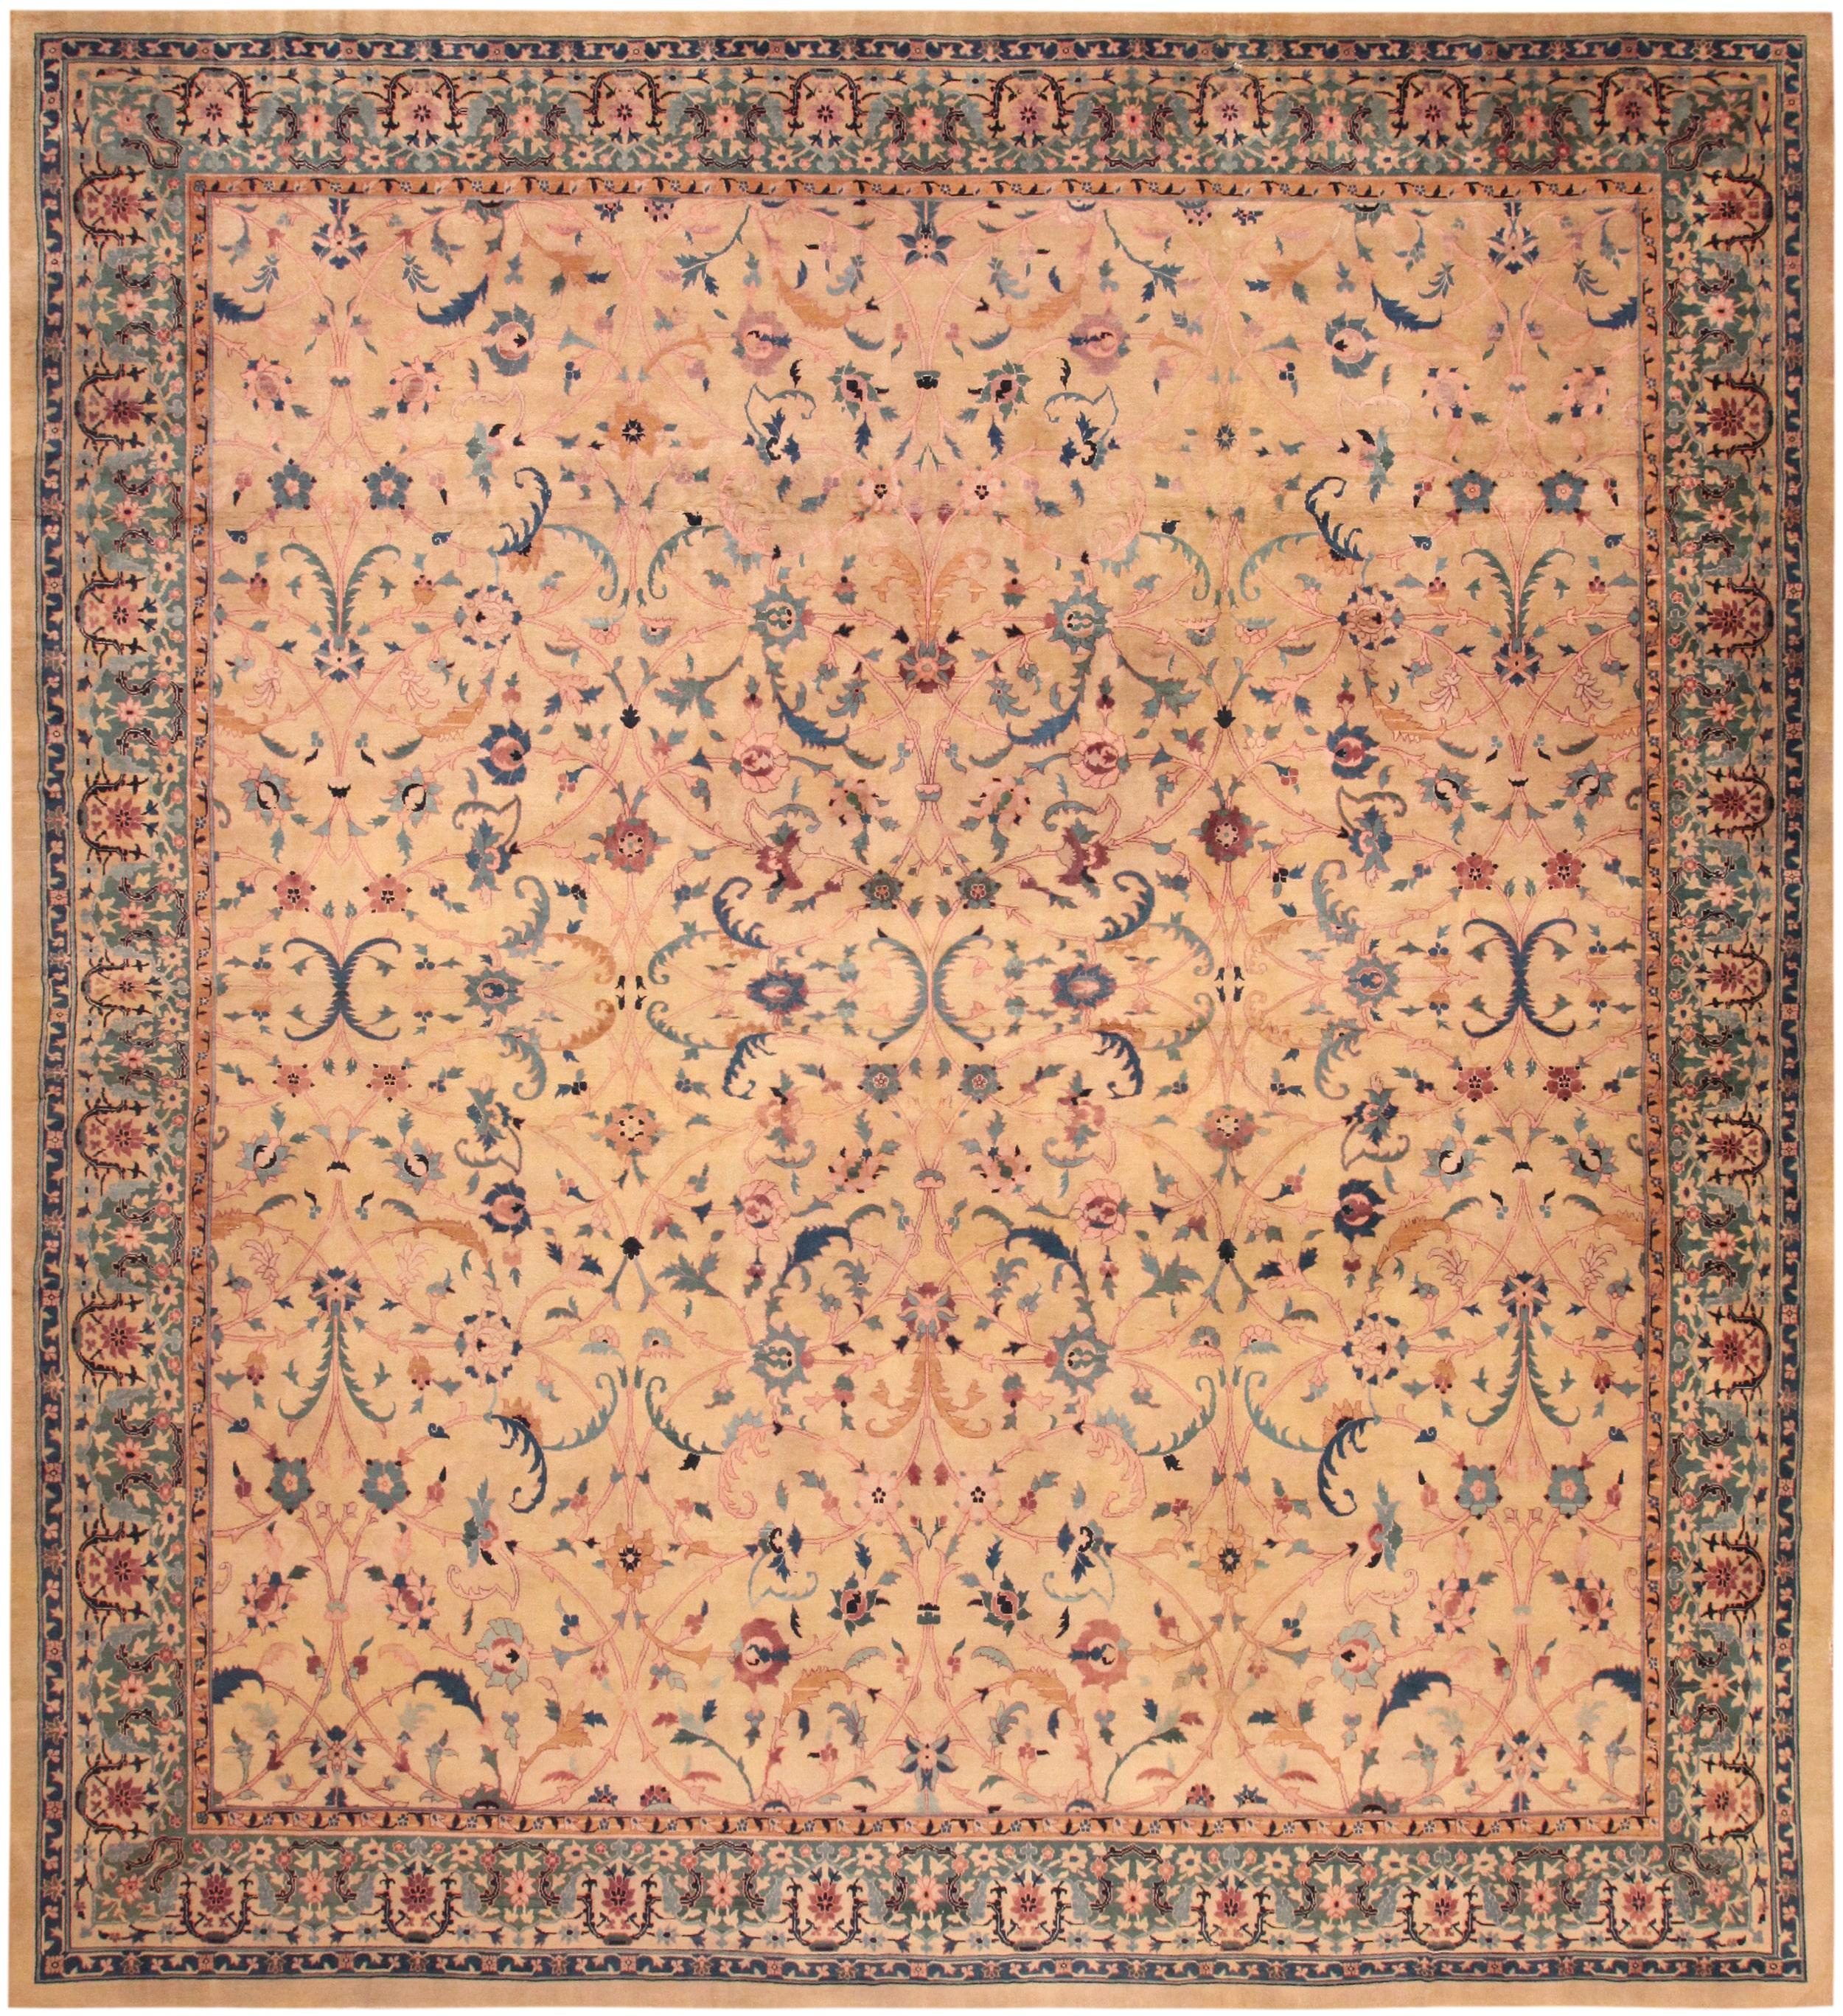 Antiker indischer Agra-Teppich. Größe: 14 ft 7 in x 15 ft 7 in